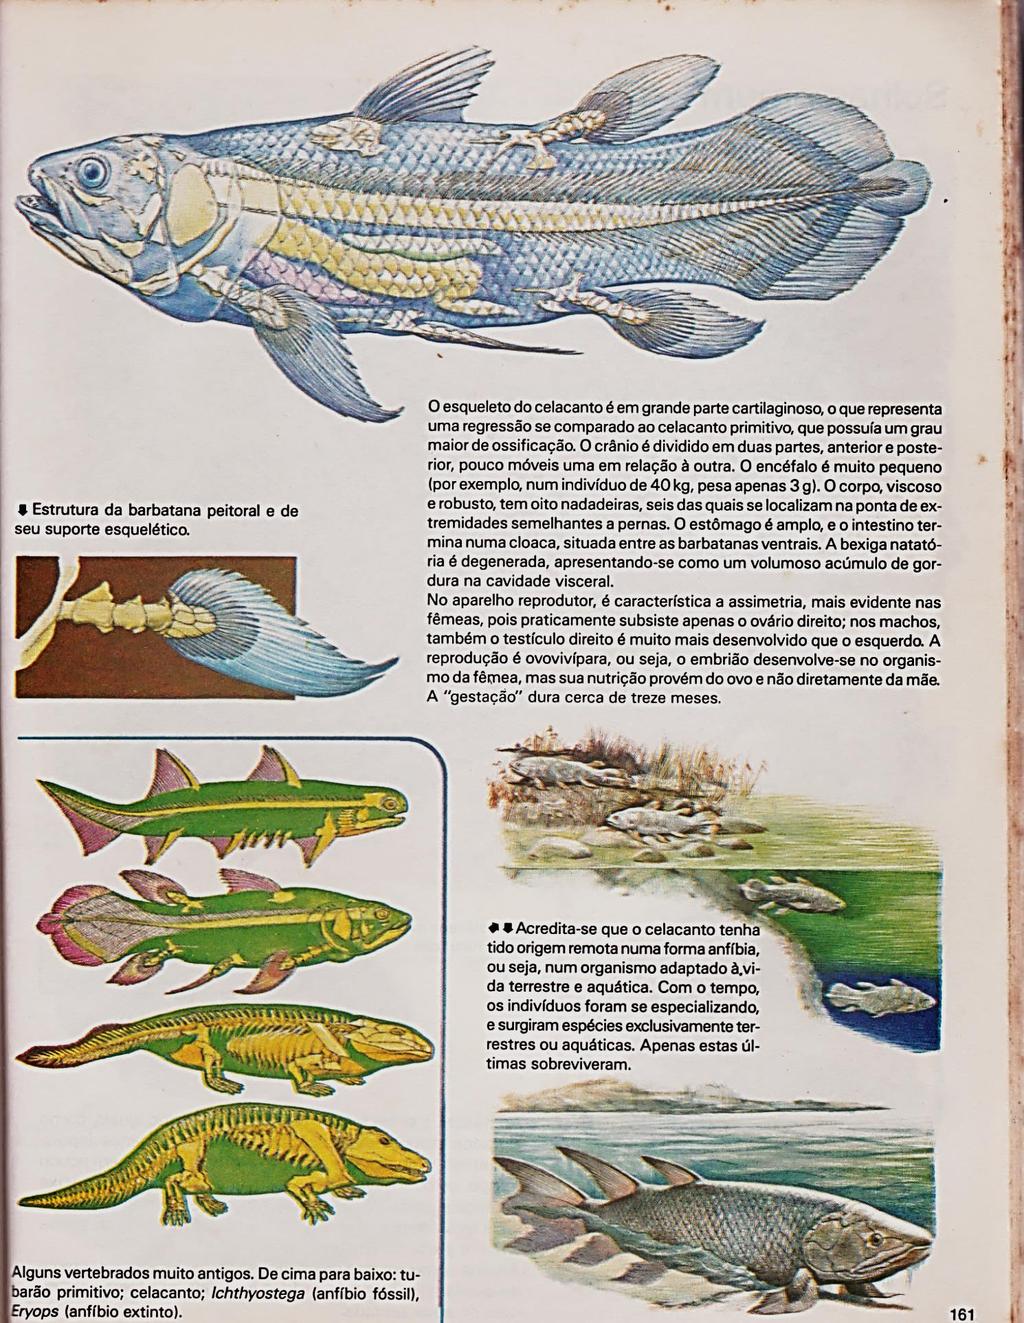 106 Figura 44b Página que descreve o celecanto como peixe